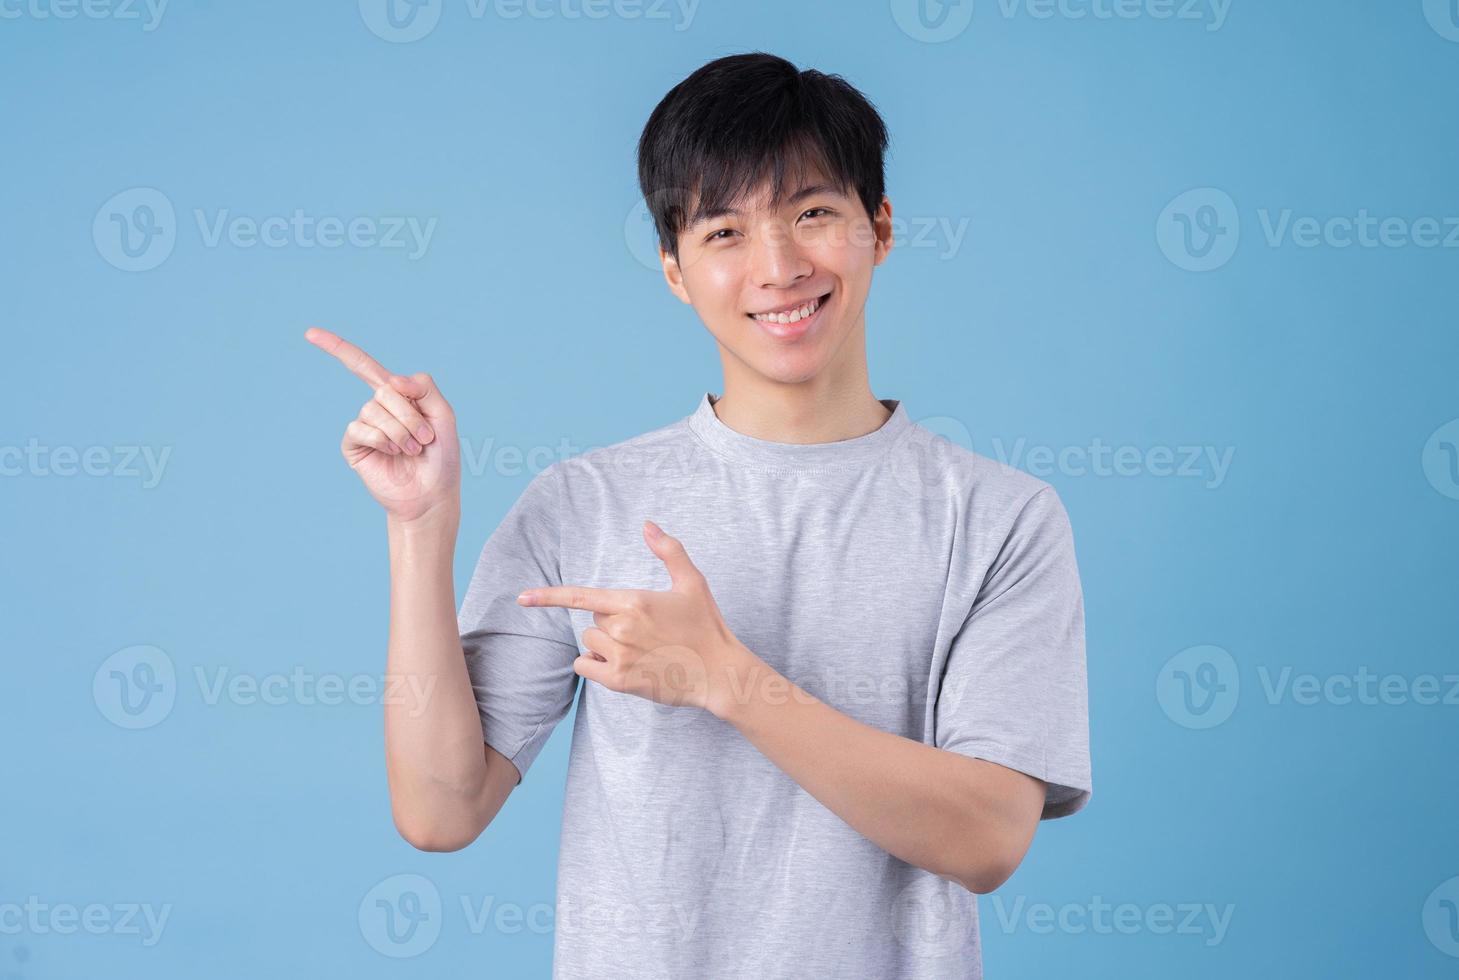 jonge Aziatische man die zich voordeed op blauwe achtergrond foto